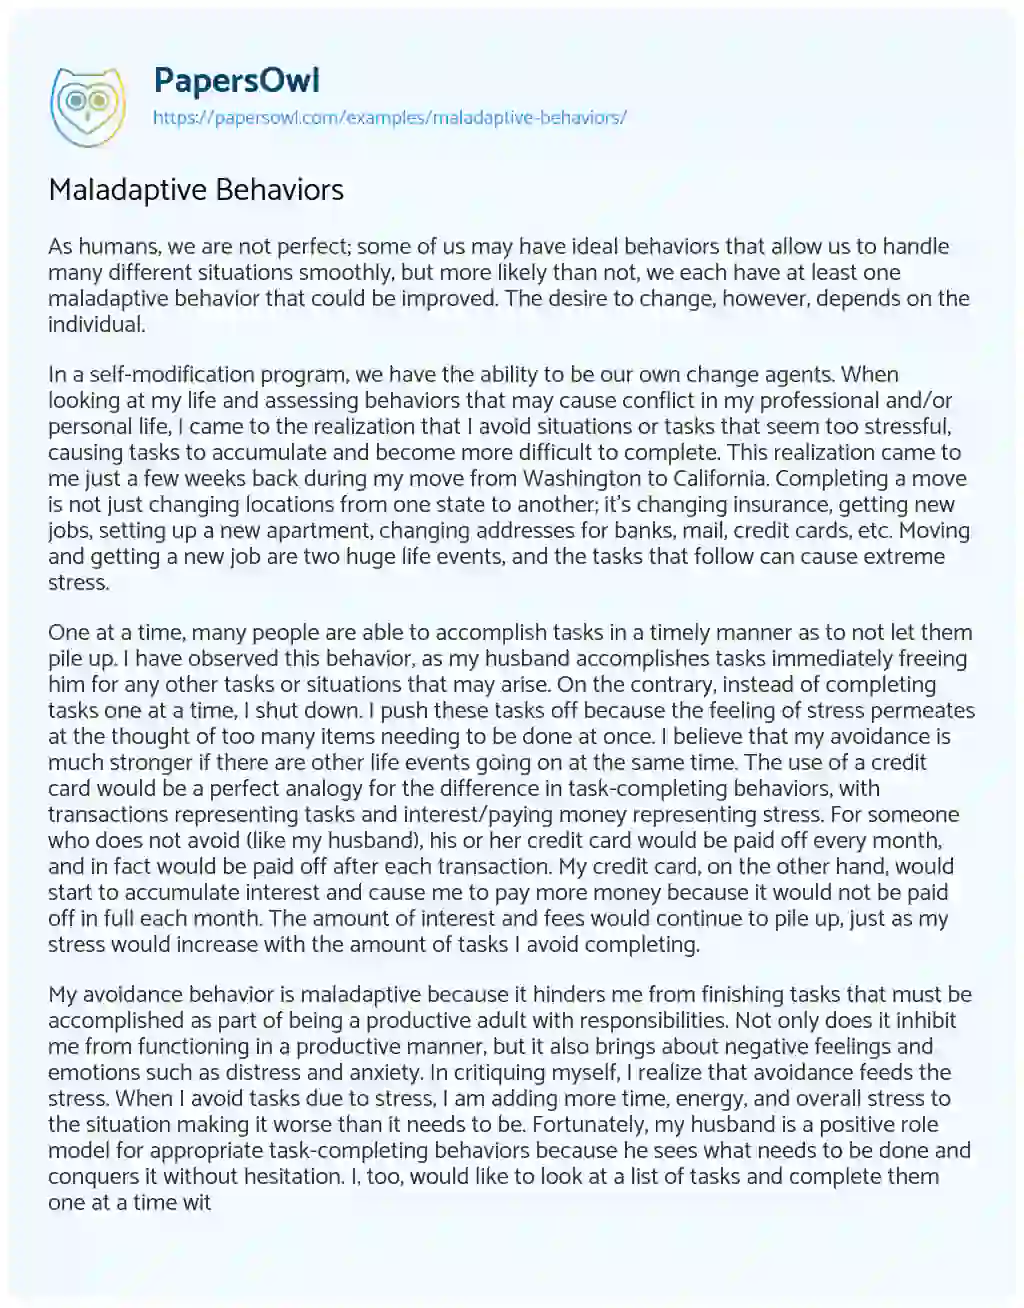 Essay on Maladaptive Behaviors